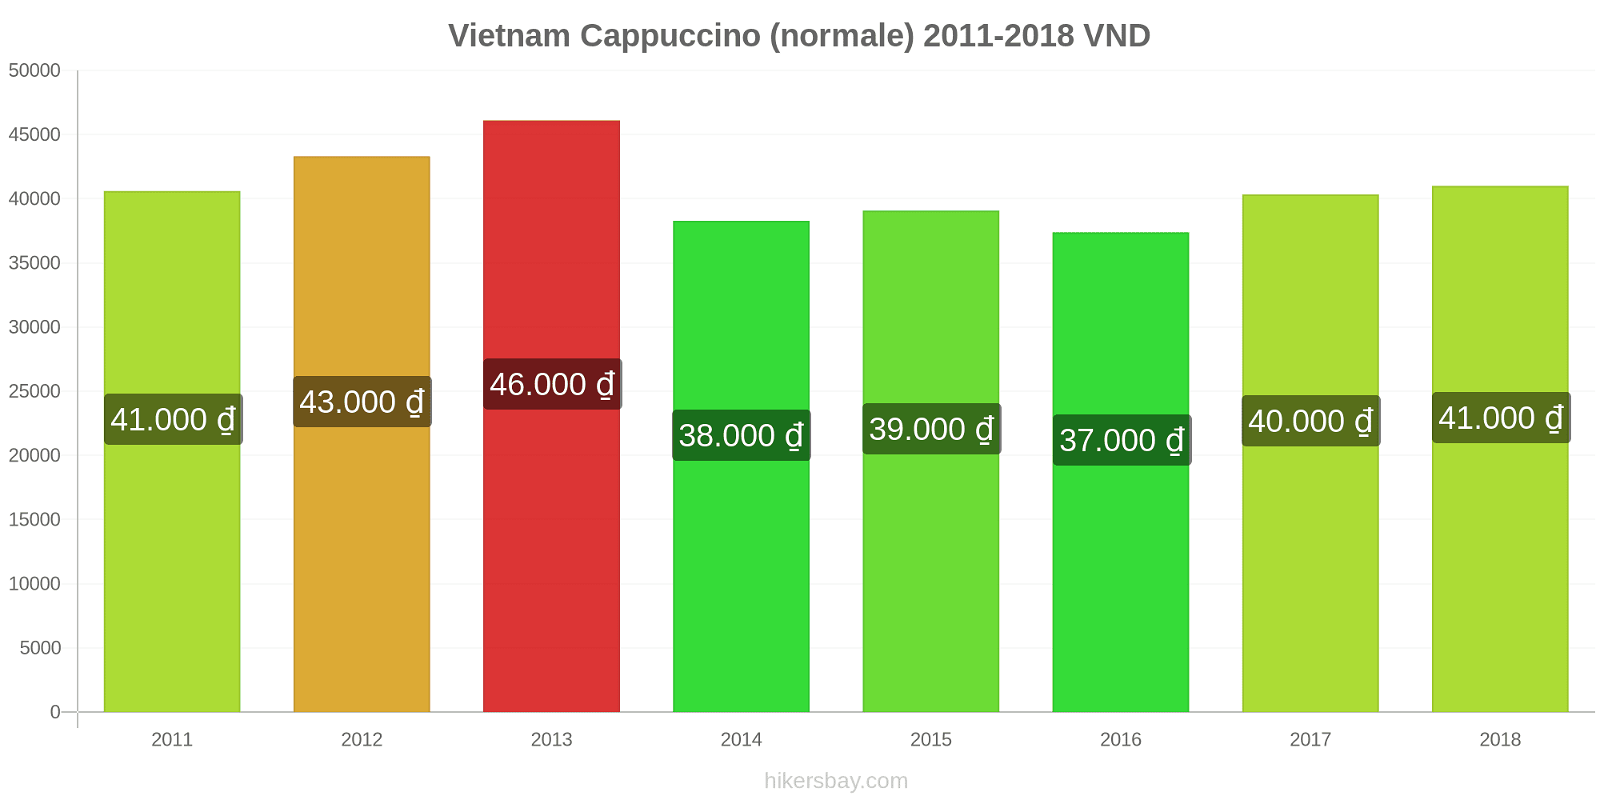 Vietnam cambi di prezzo Cappuccino hikersbay.com